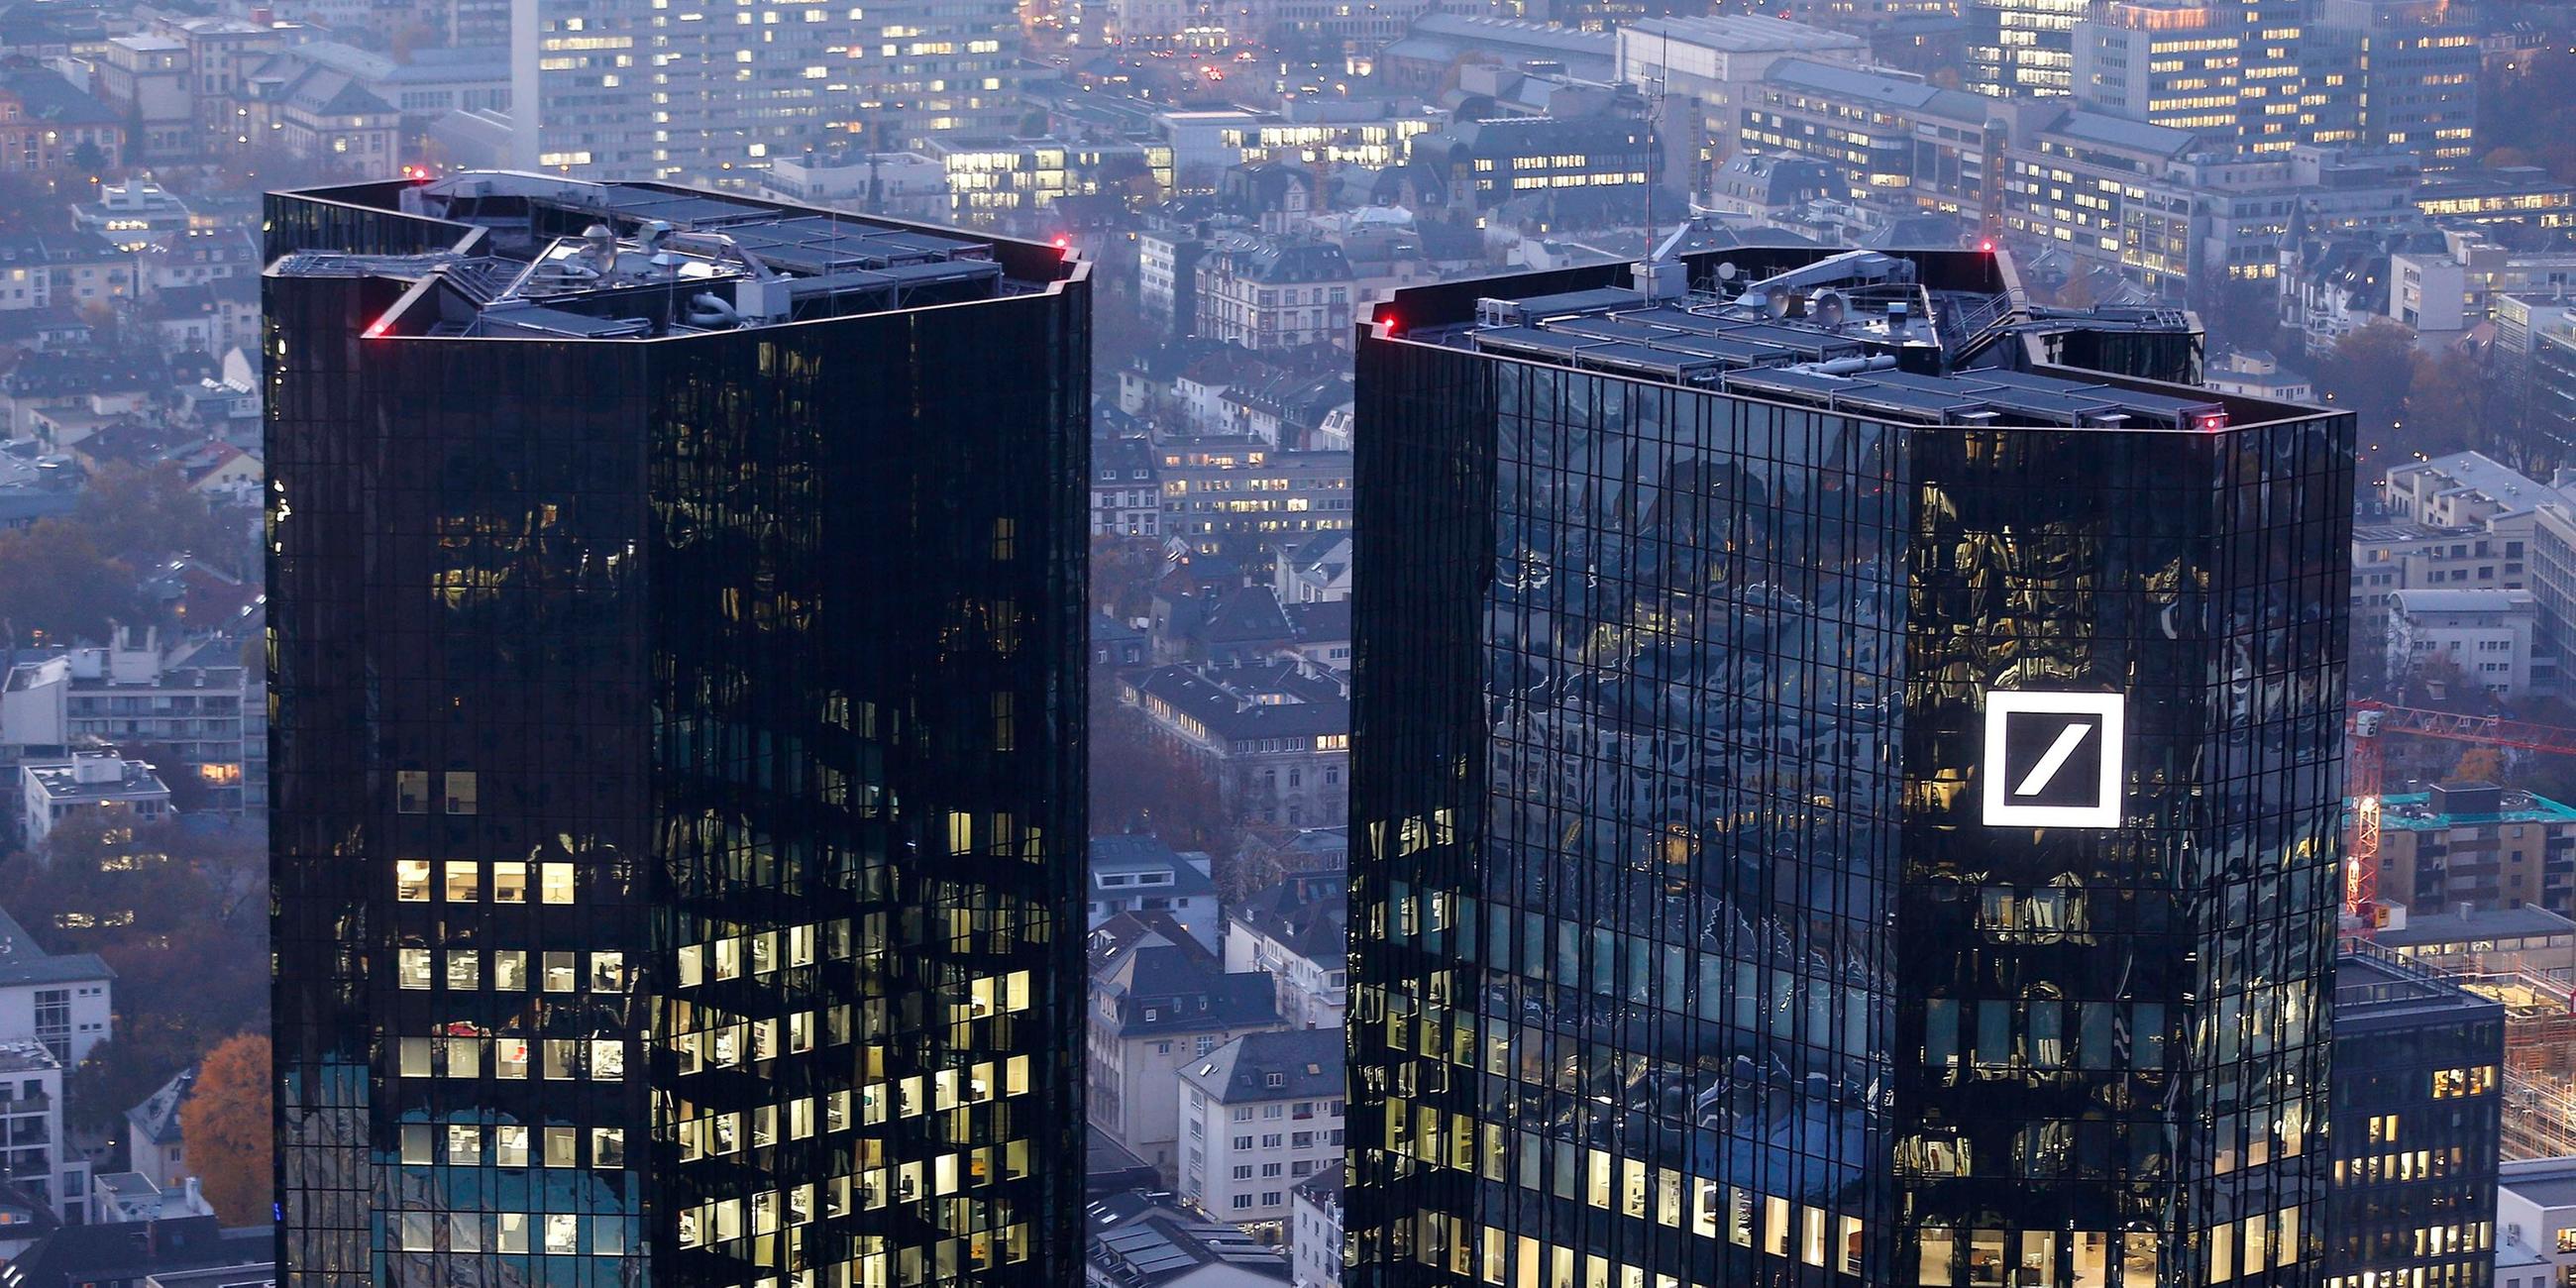 Zentrale der Deutschen Bank in Frankfurt, zwei hochhäuser im frühen Abendlicht.